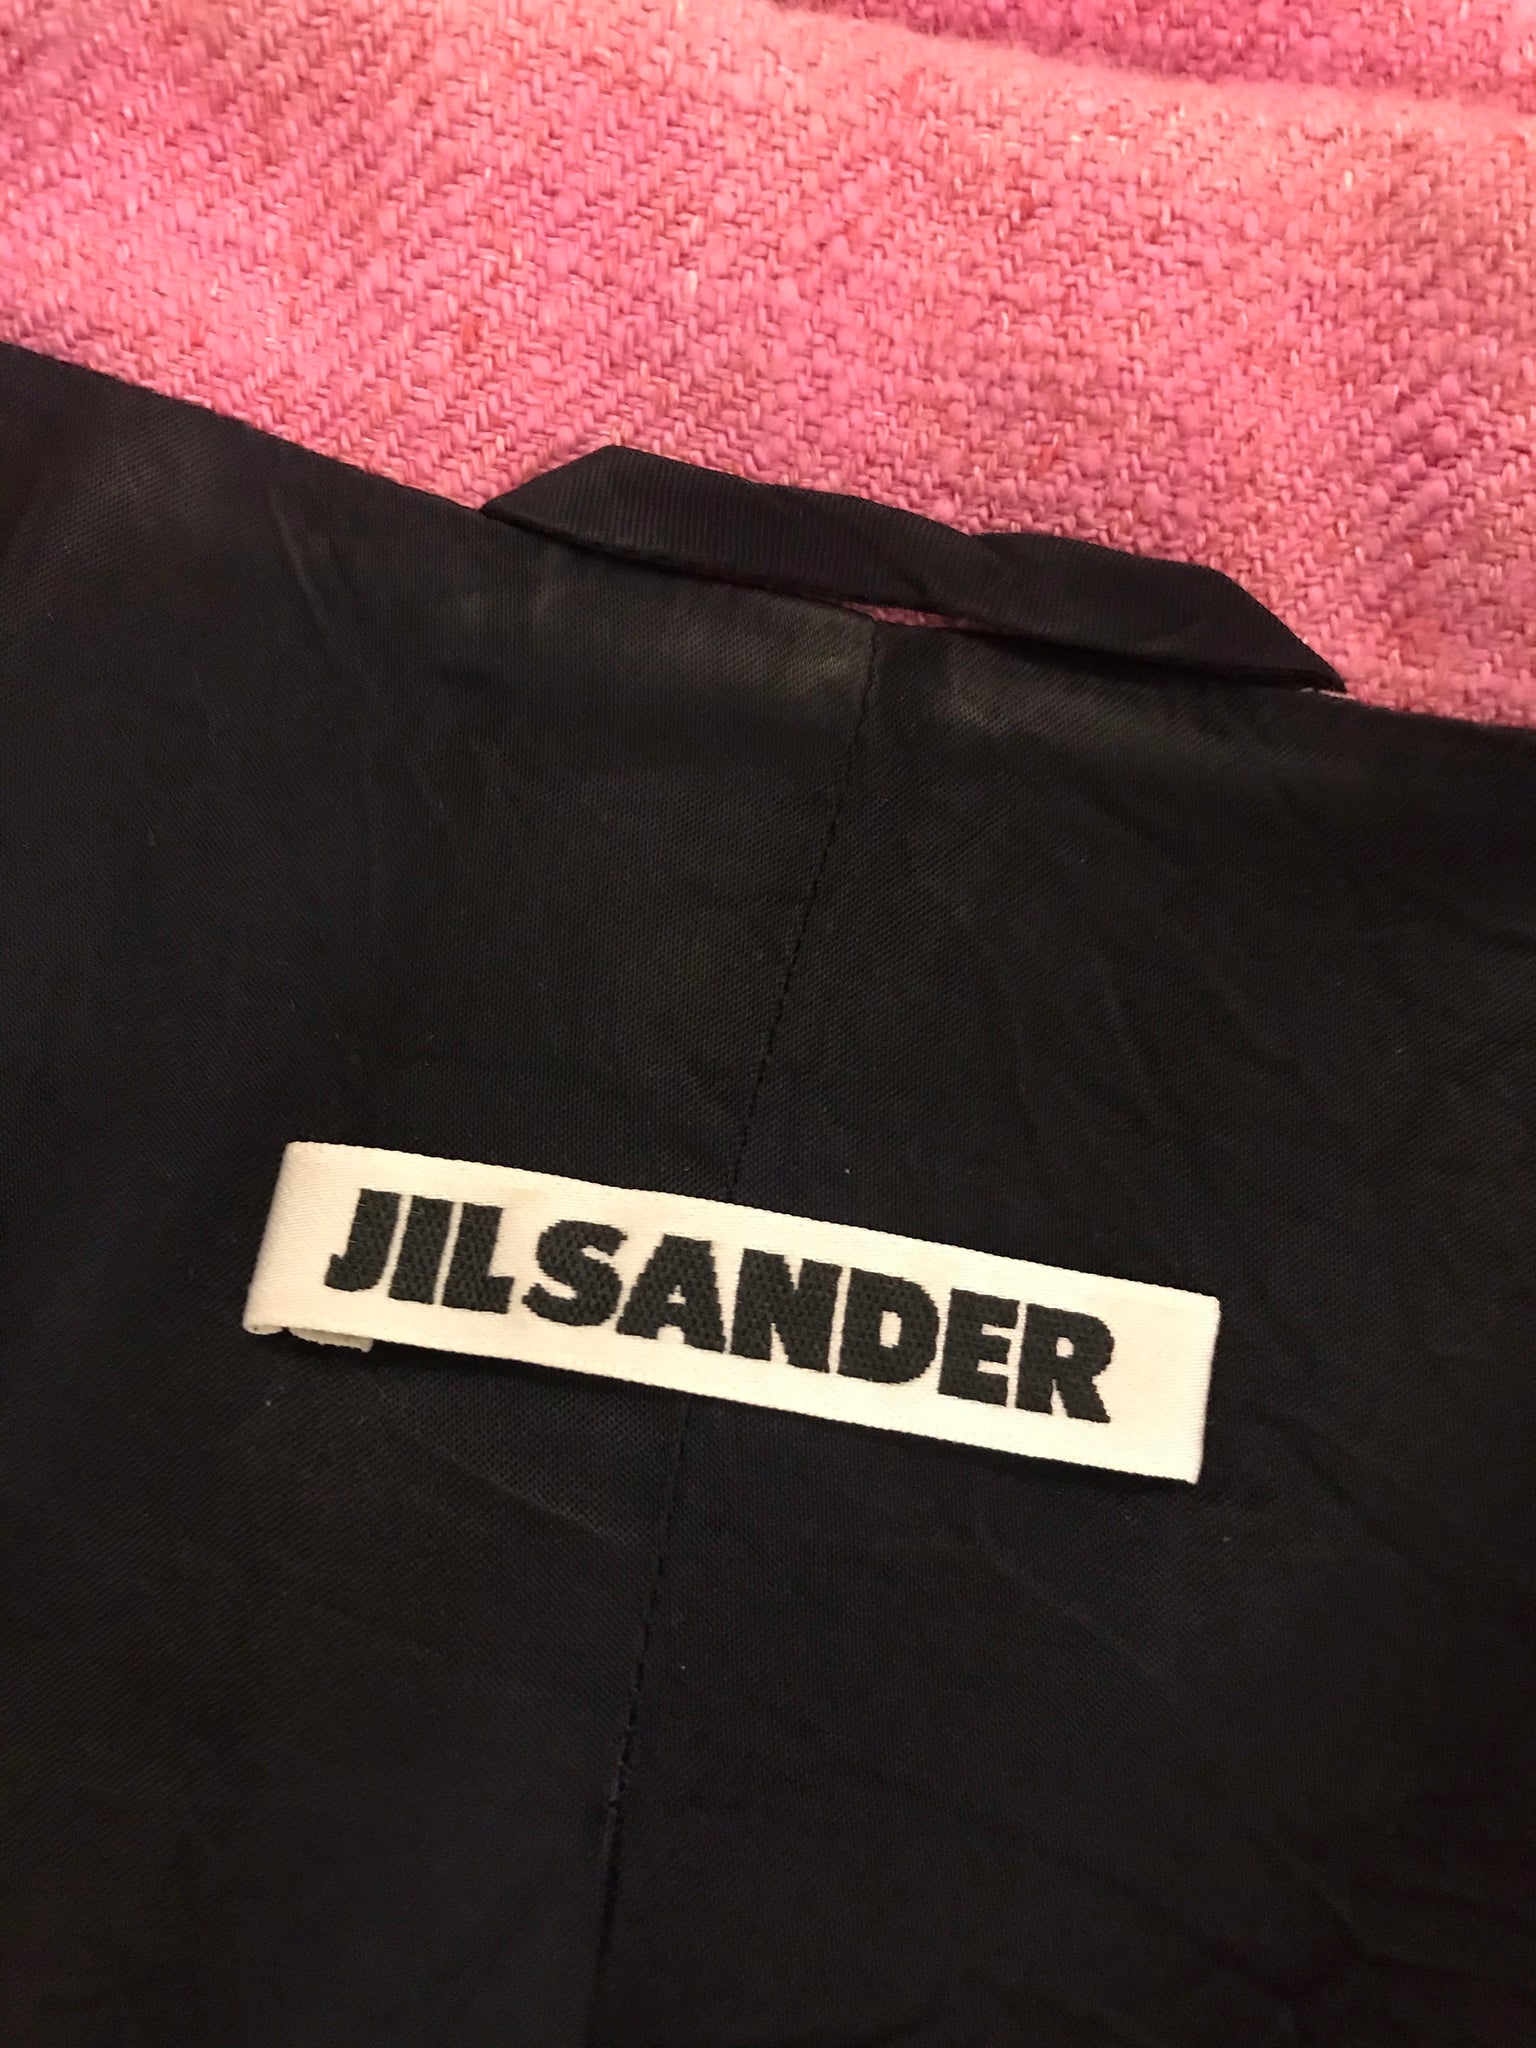 Isabella's Wardrobe Jil Sander Cotton/Linen Mix Blazer.